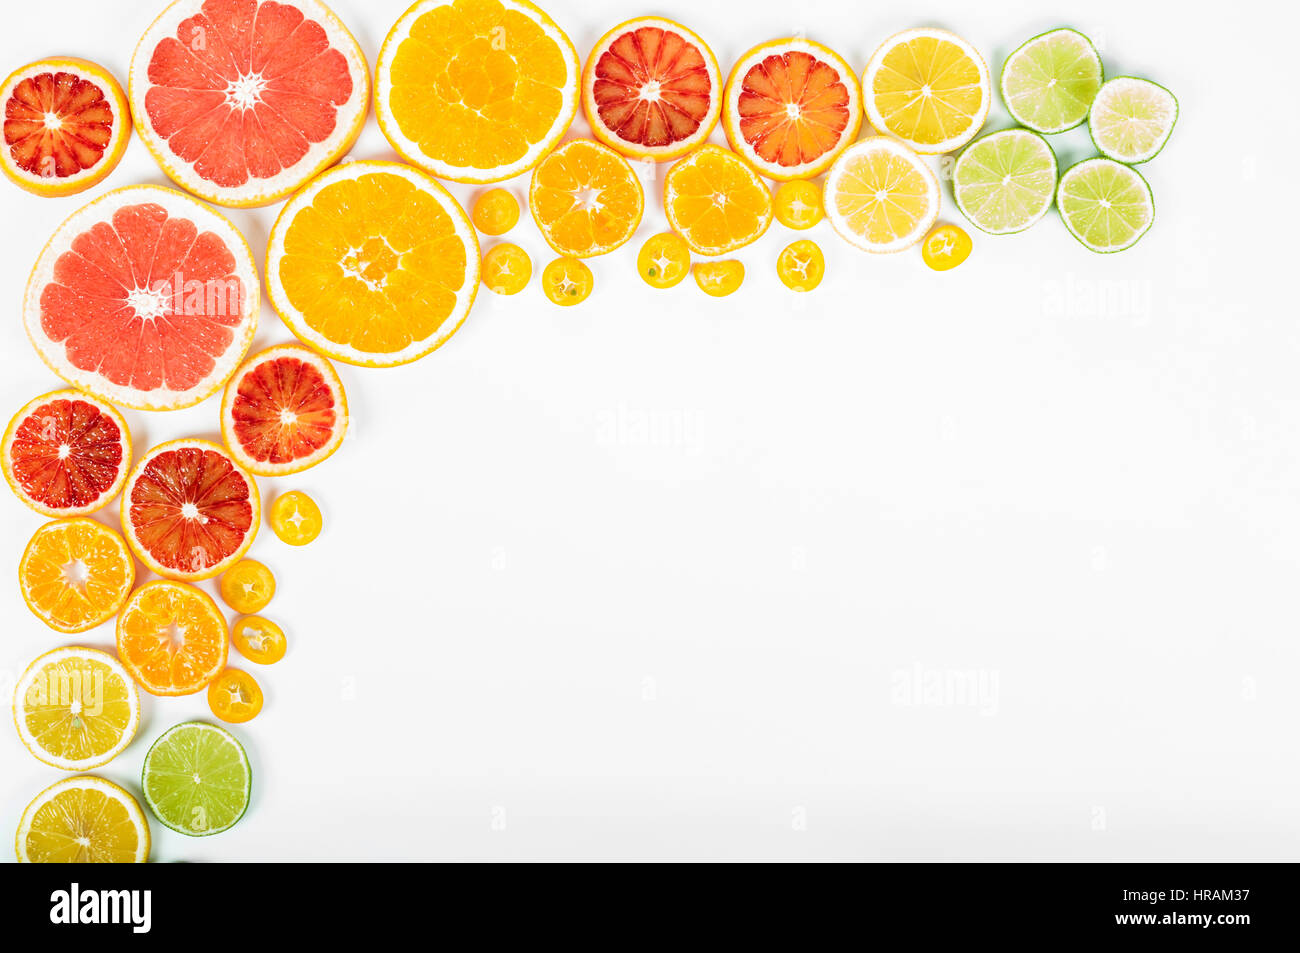 Bunte frische Zitrusfrüchte auf weißem Hintergrund. Orange, Mandarine, Limette, Blutorange, Grapefruit. Obst-Hintergrund. Sommer-Food-Konzept. Flach legen, t Stockfoto